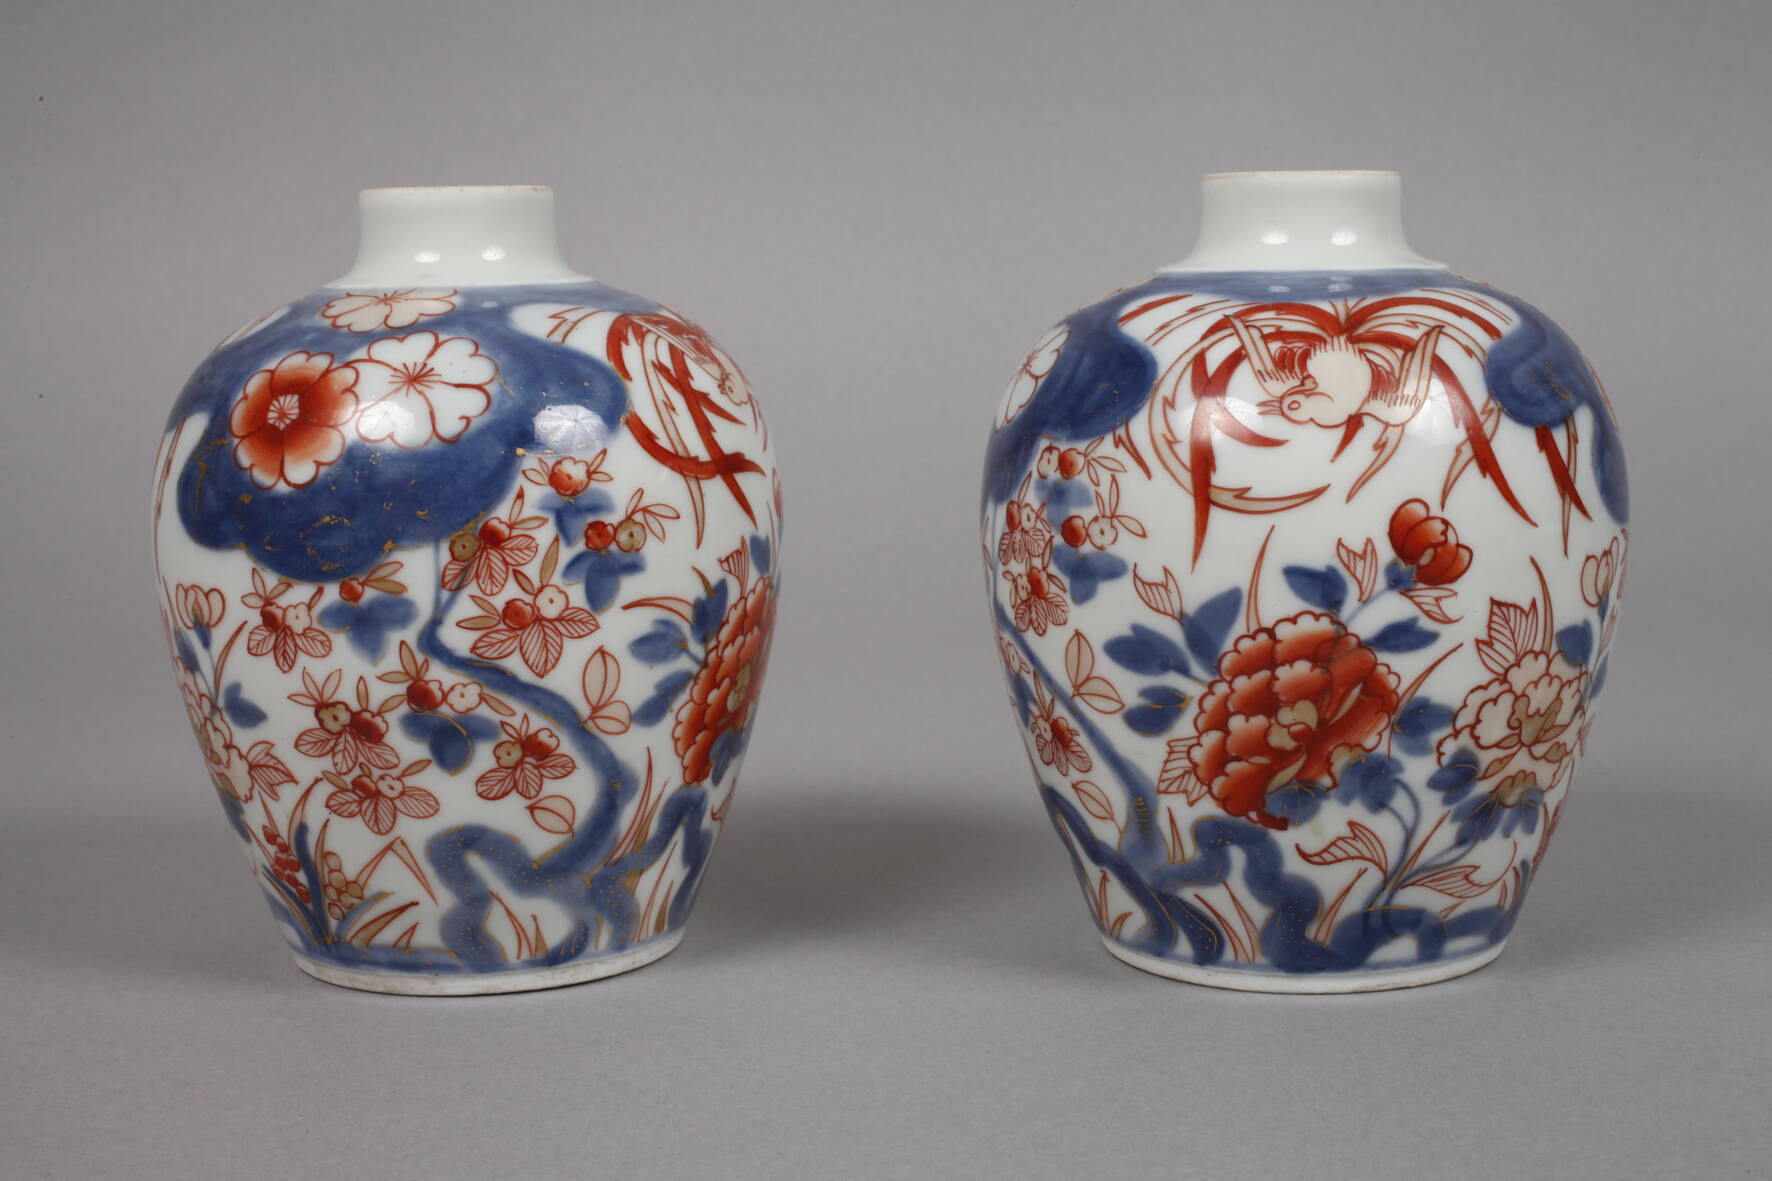 Paar Vasen Imariwohl China, 18. Jh., ungemarkt, Porzellan in kobaltblauer Unter- und - Image 2 of 3